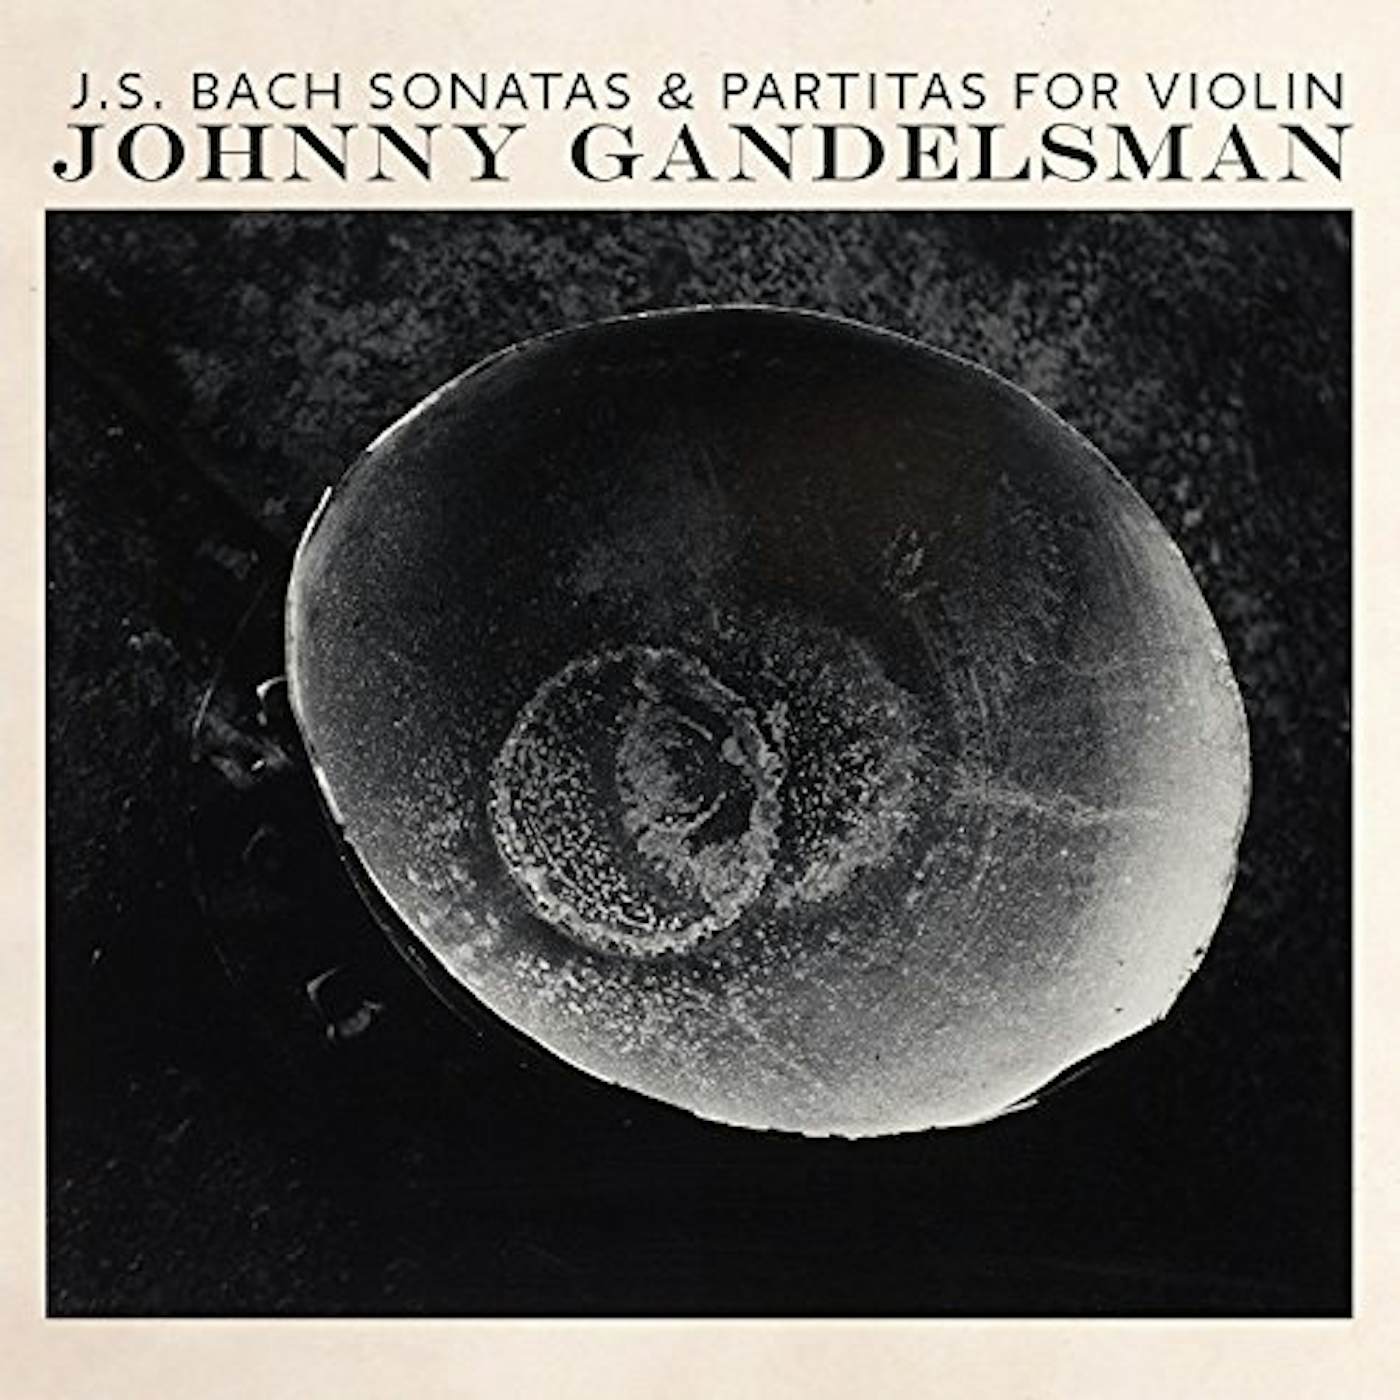 Johnny Gandelsman JS Bach: Complete Sonatas & Partitas for Violin Vinyl Record